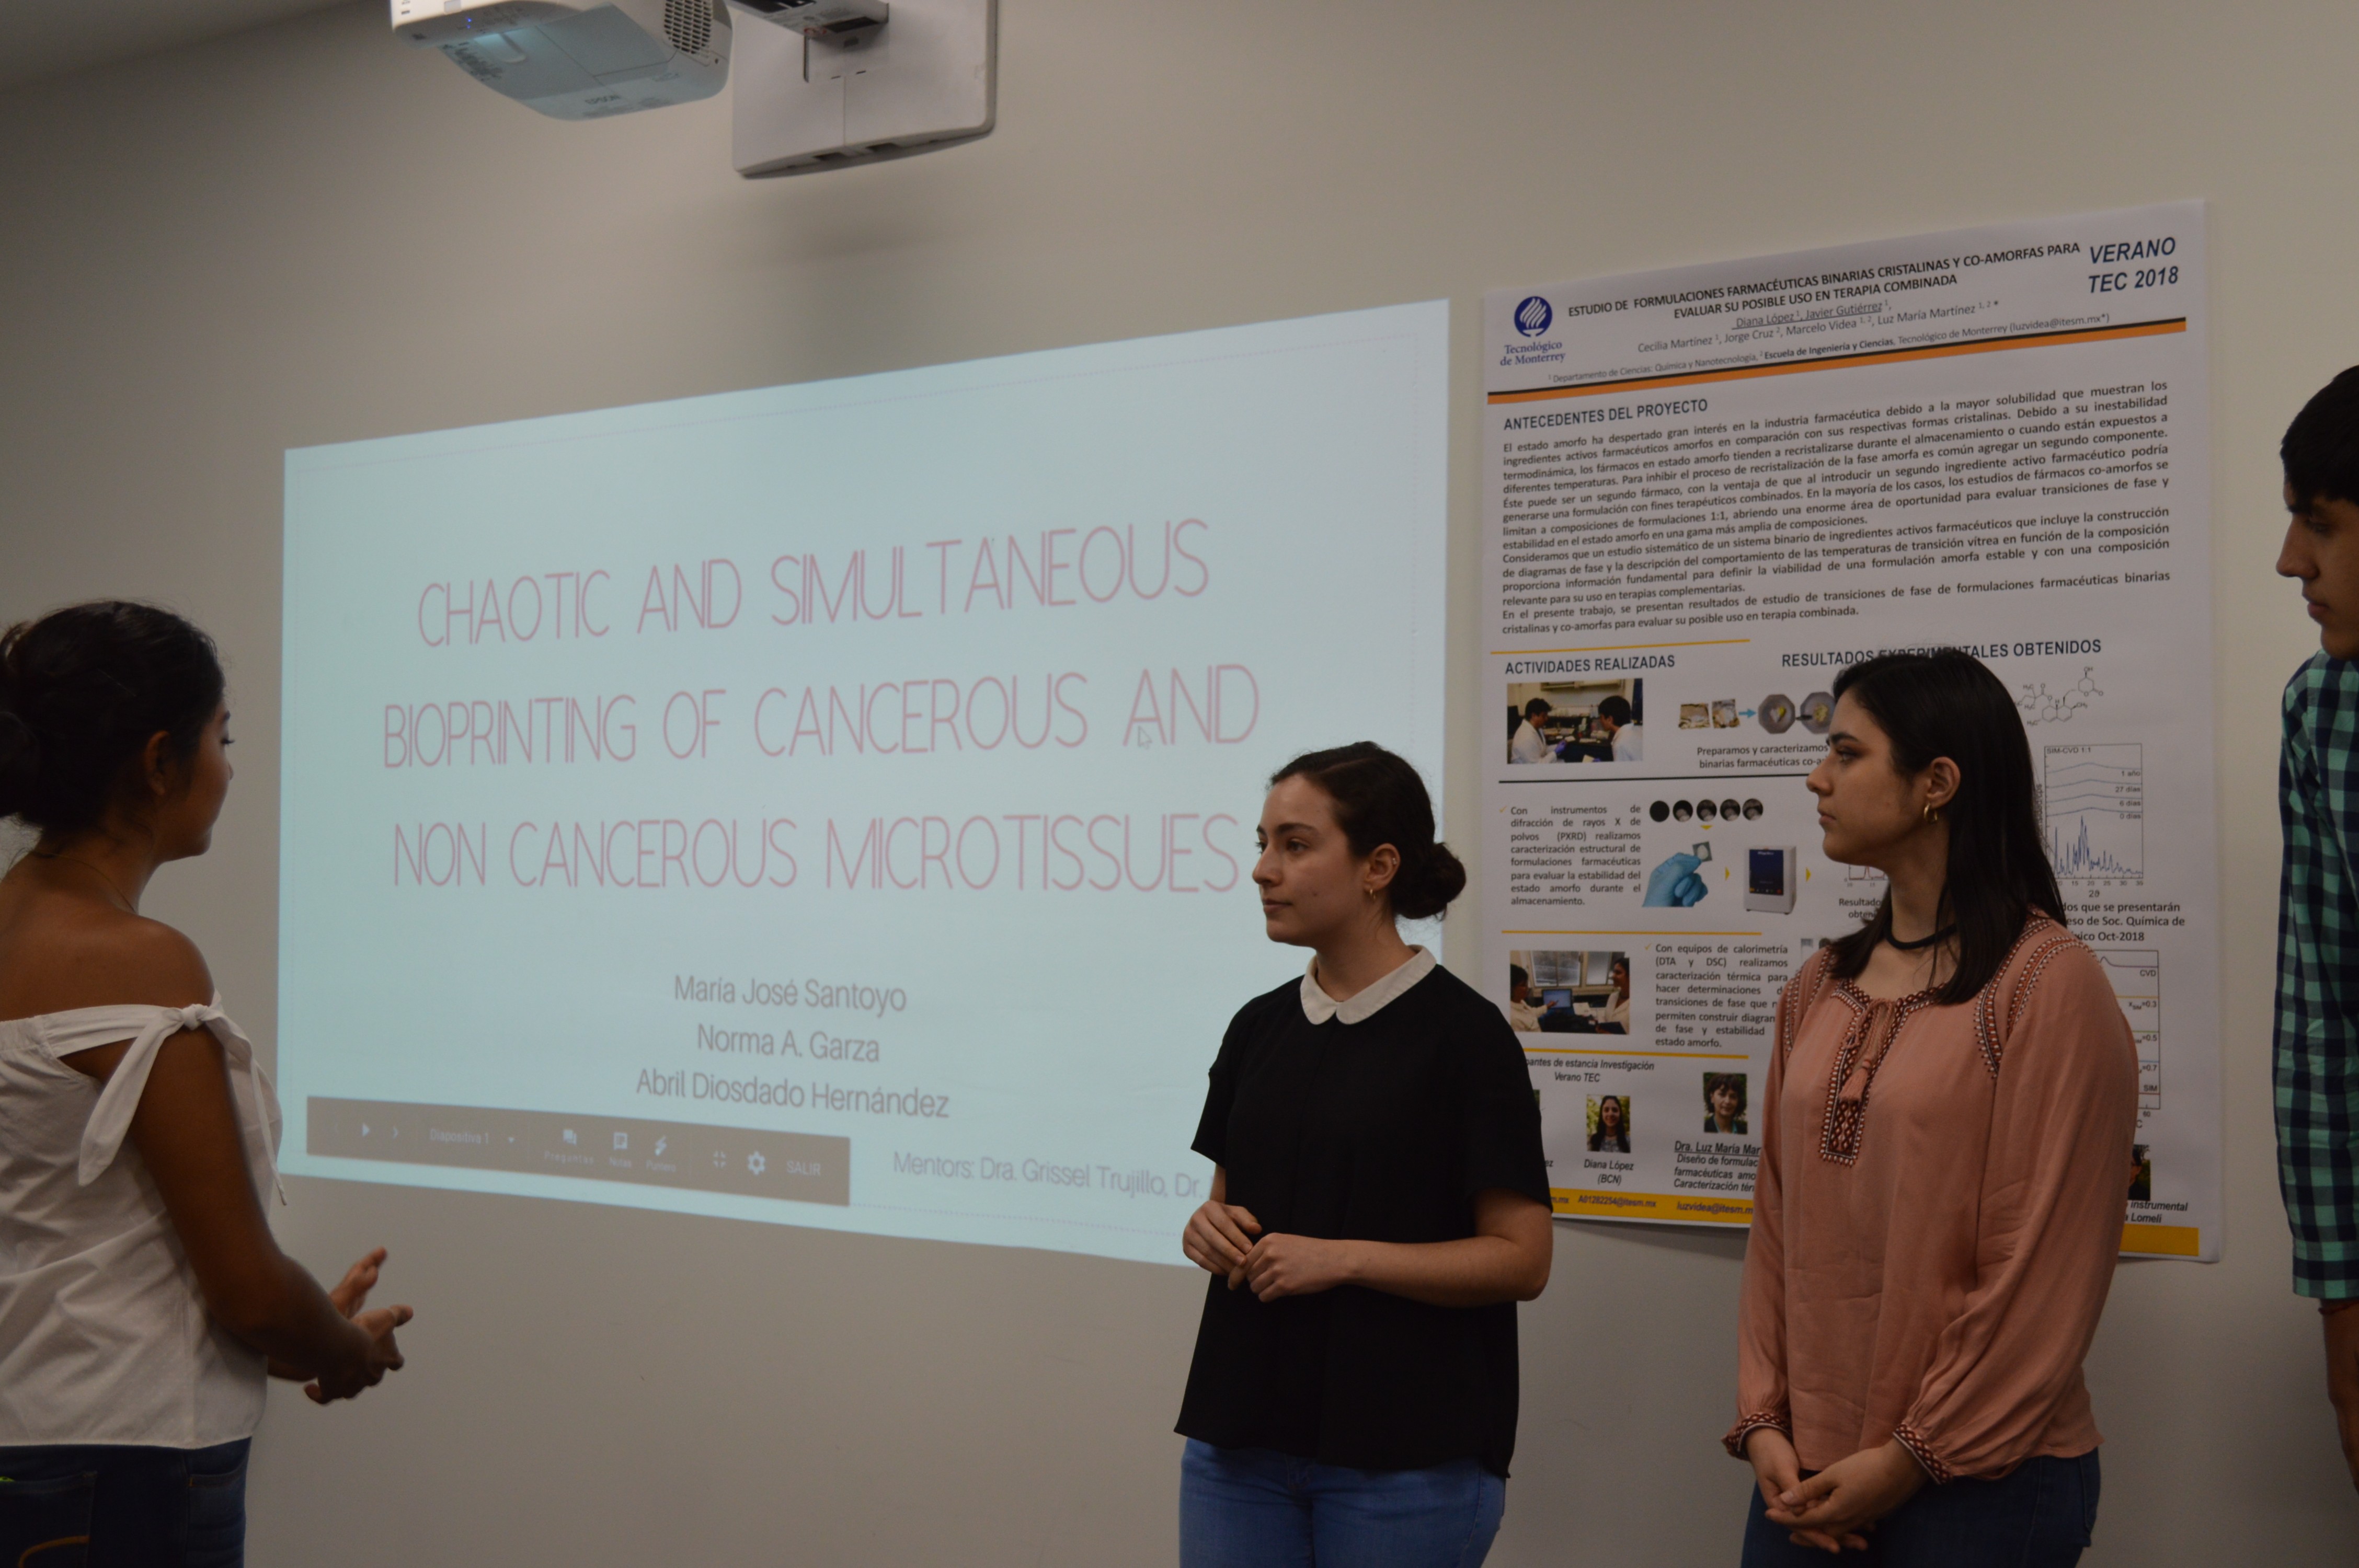 María José Santoyo, Norma Garza y Abril Diosdado con su proyecto "Chaotic and Simultaneous Bioprinting of Cancerous and Non Cancerous Microtissues"